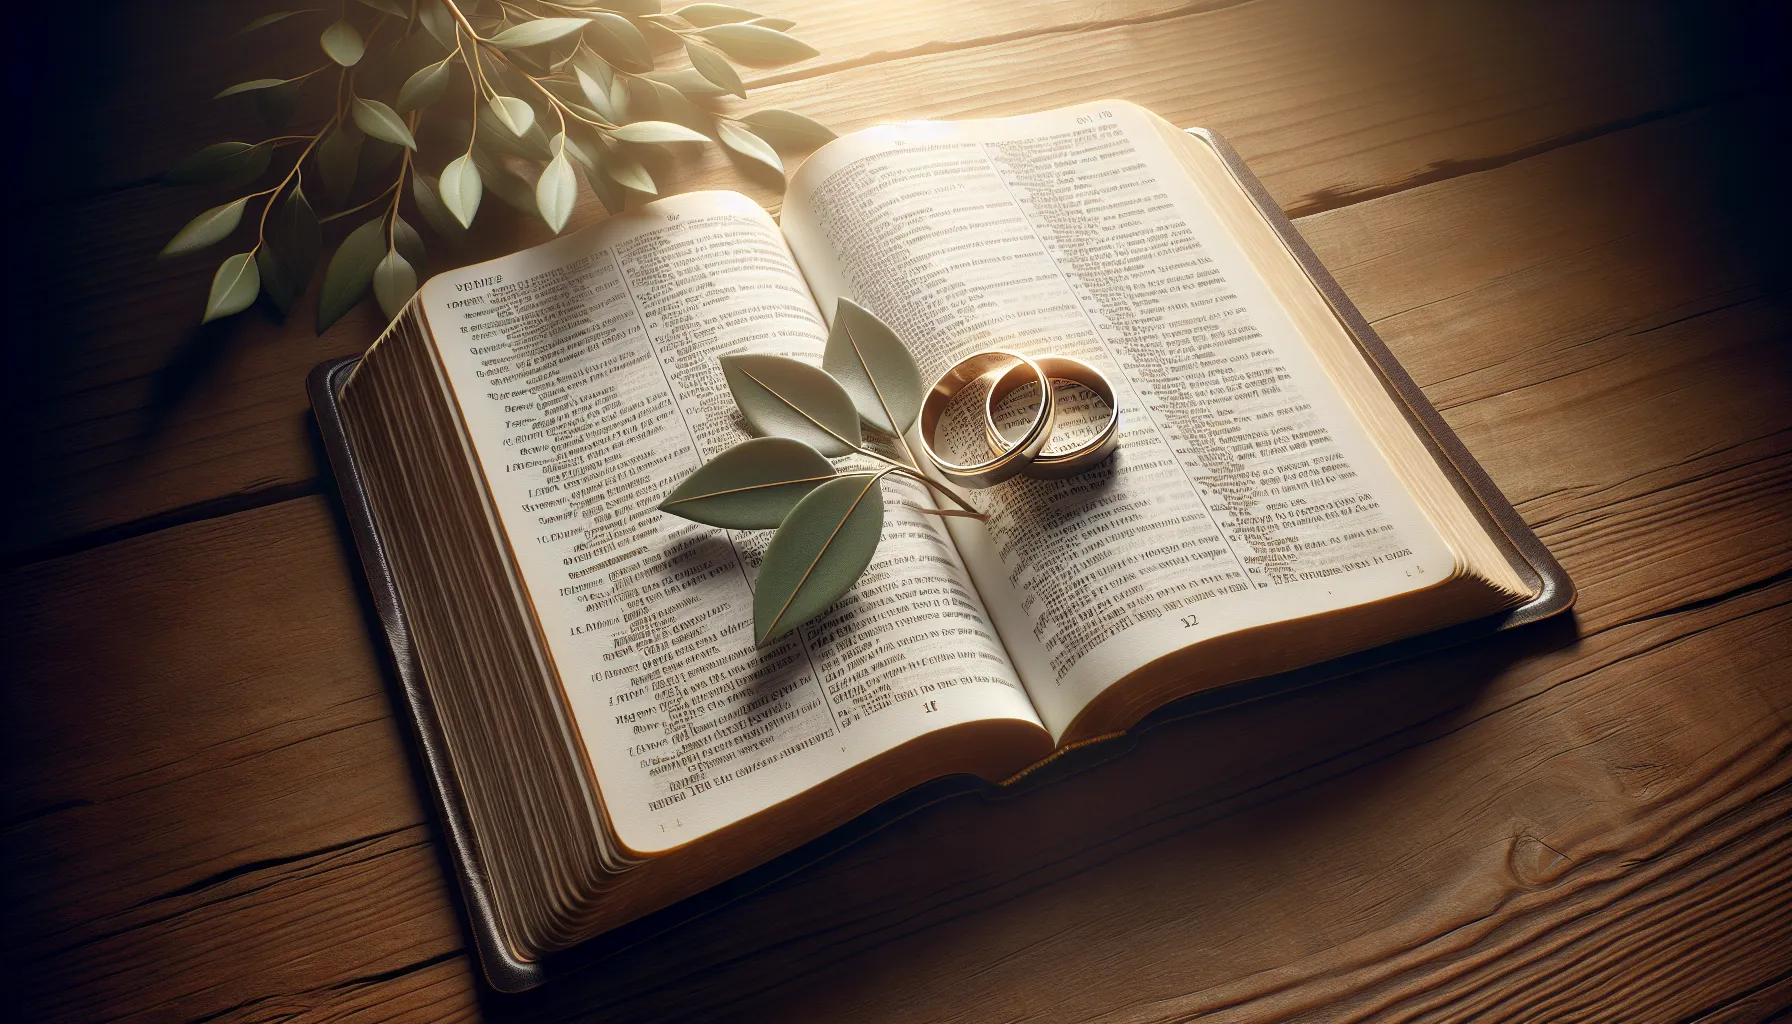 Imagen de una Biblia abierta con dos alianzas de boda entrelazadas sobre el libro